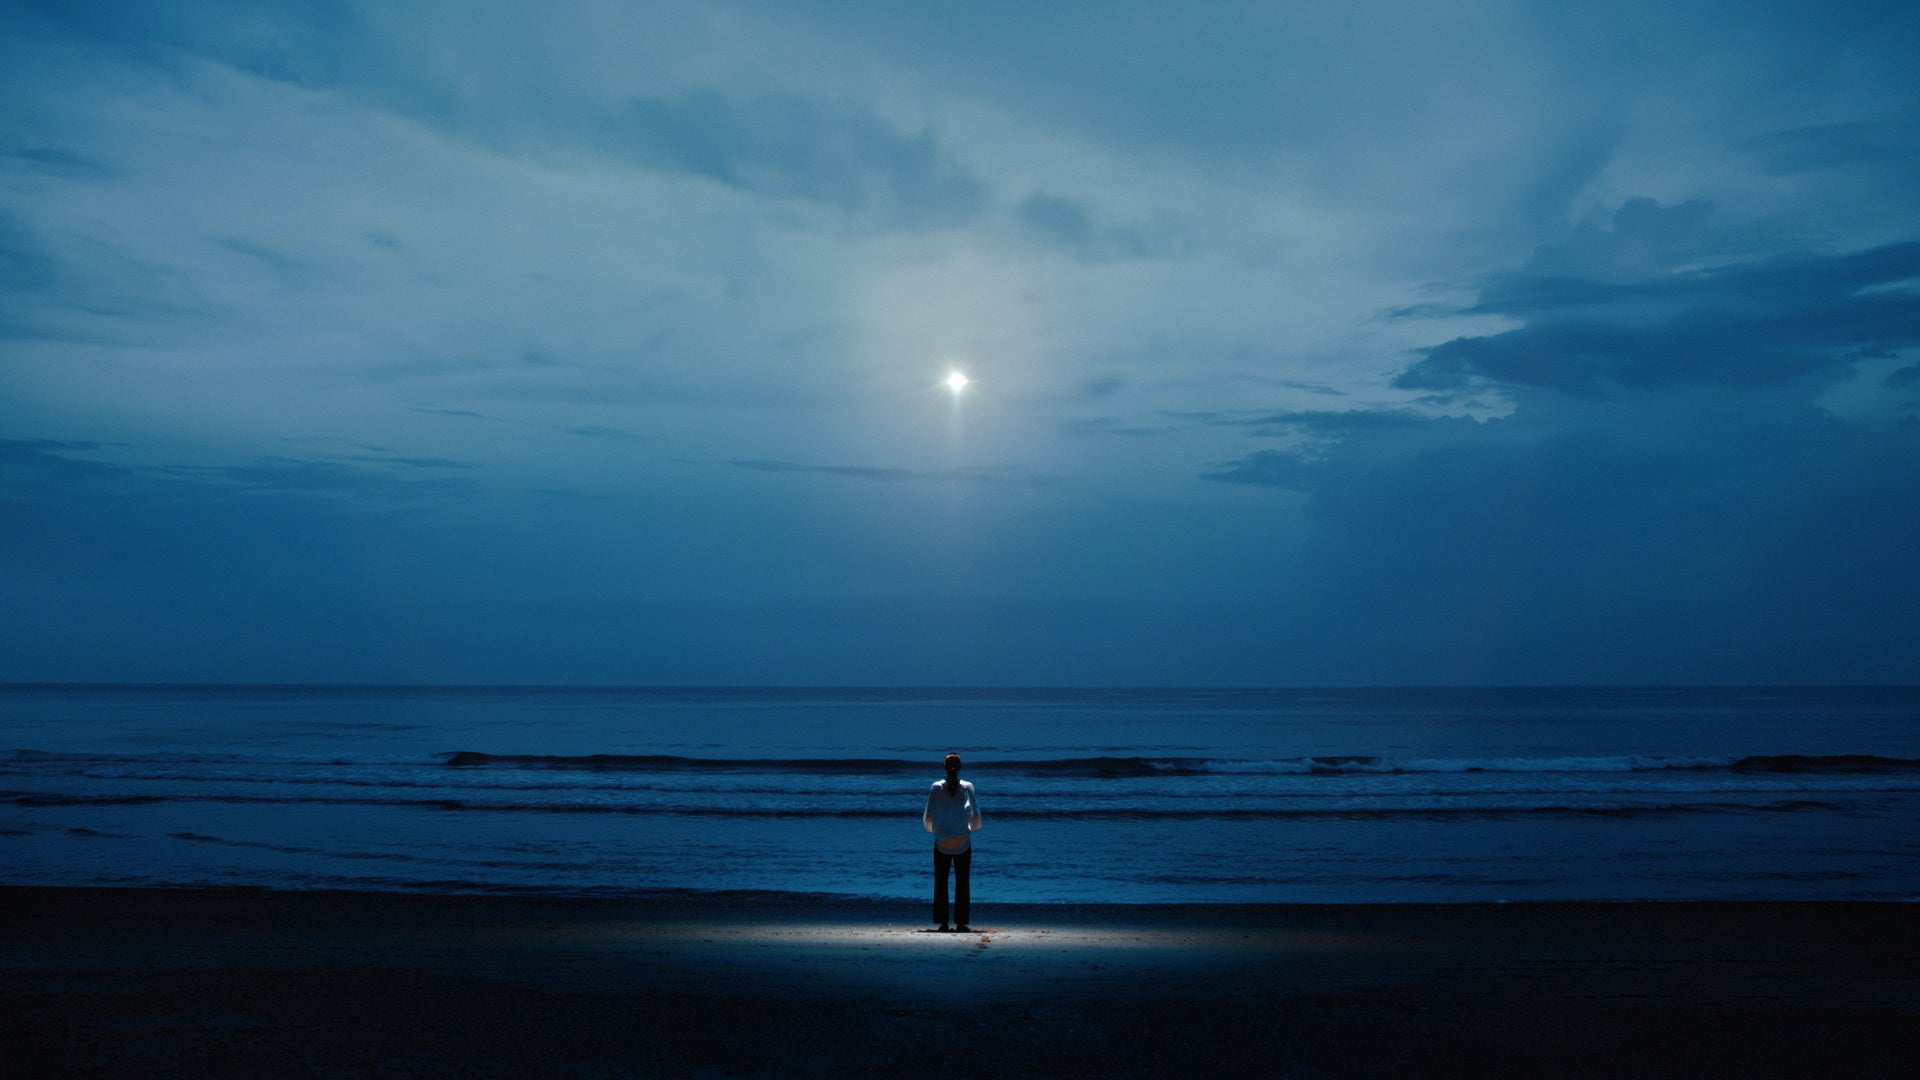 yama × キタニタツヤ『憧れのままに』KONA Collaboration Videoが、アジア太平洋広告祭 FILM CRAFT LOTUS部門でブロンズ、ファイナリスト受賞。